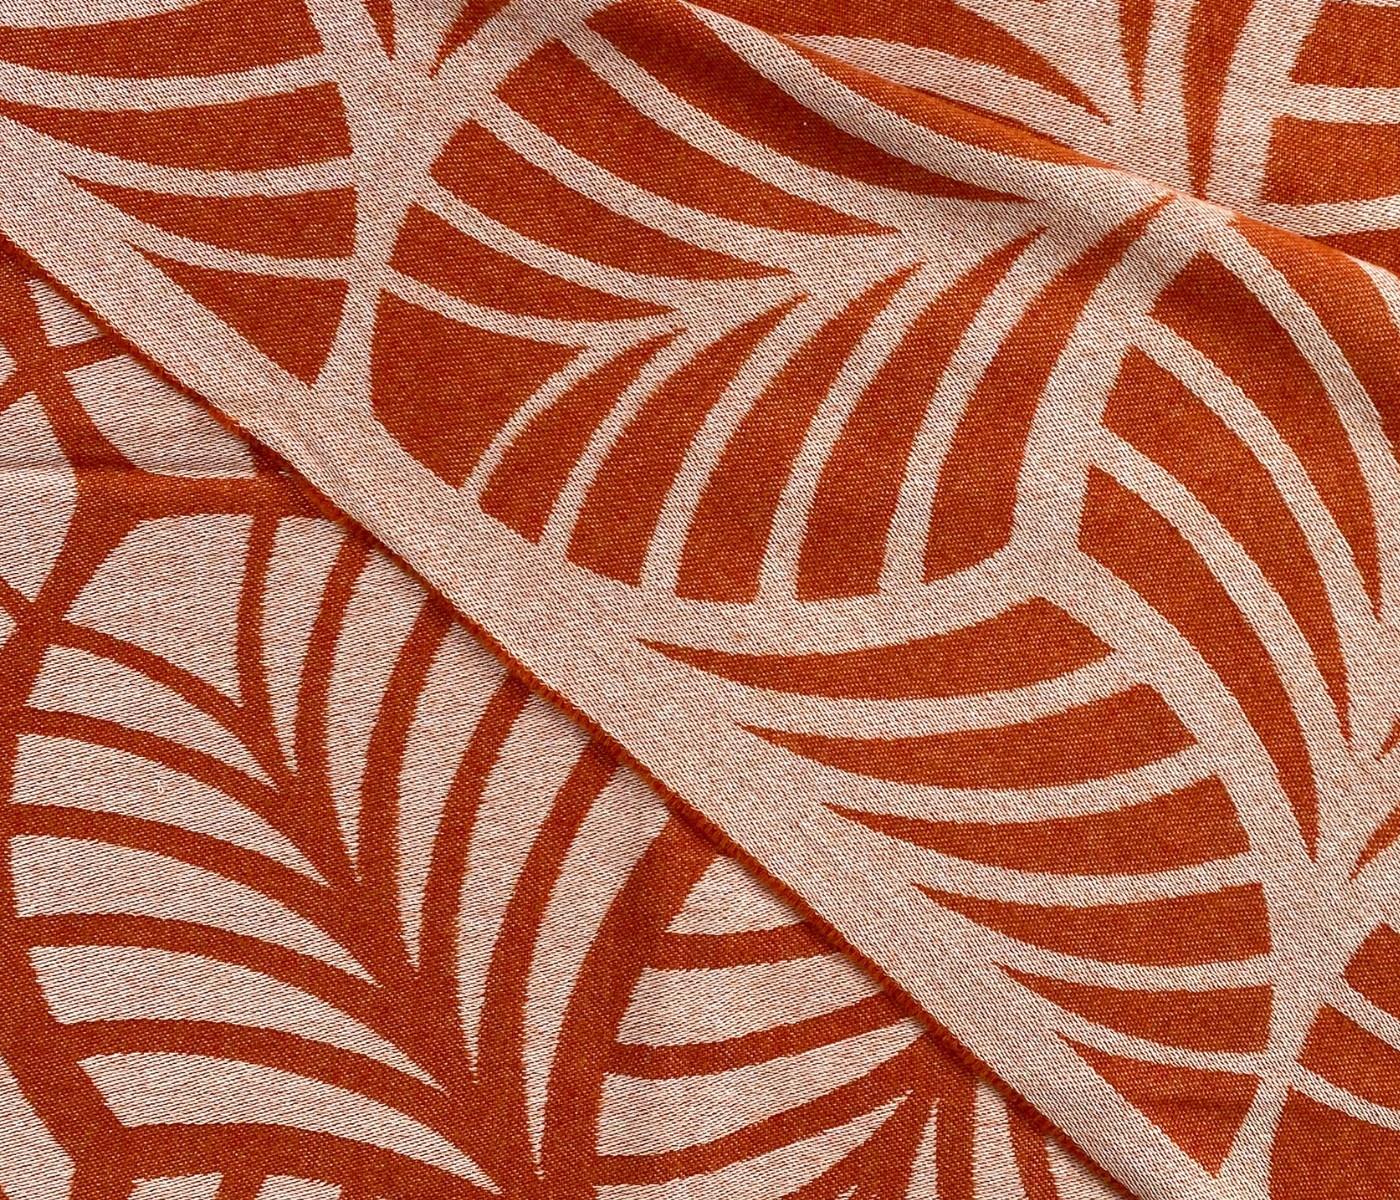 Eagle Products Wolldecke aus Schurwolle in orange, Motiv: Blätter, 135 x 220 cm